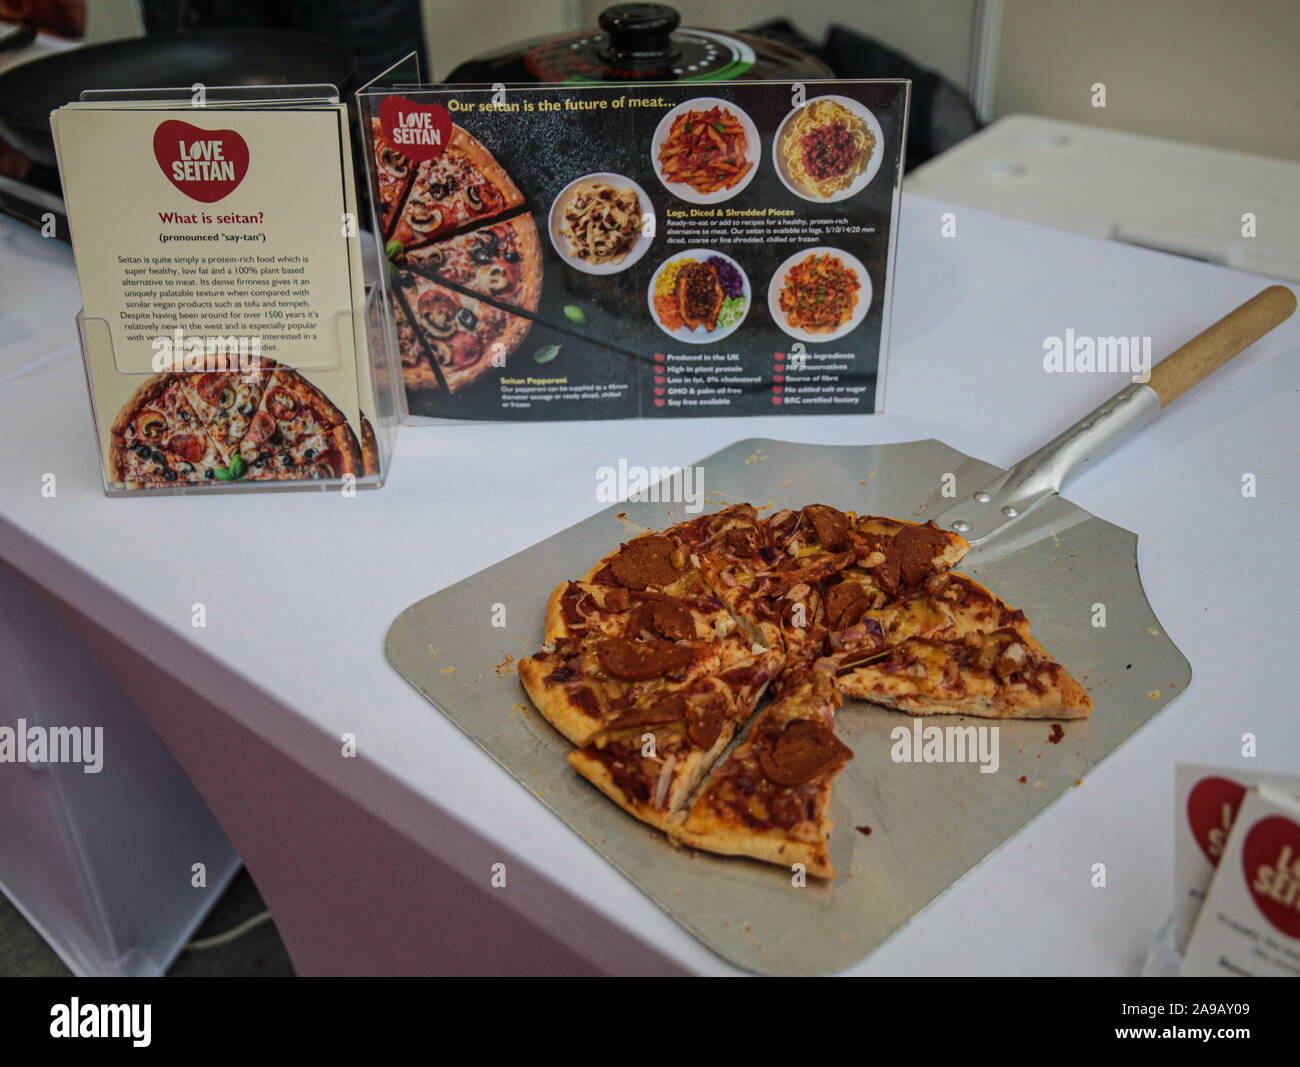 London UK 14 novembre 2019 Pizza au remplissage du seitan, également connu sous le nom de gluten de blé, le seitan est apparu pour la première fois au cours du sixième siècle comme ingrédient dans la cuisine asiatique et a été un substitut de la viande pour plus de mille ans, trouvés à l'unique événement dédié à la pizza et pâtes alimentaires en Europe .avec plus de 200 exposants, 1 000 marques leaders de l'industrie donne l'occasion de découvrir le meilleur de l'industrie à partir de chaînes de restaurants, pizzerias, restaurants indépendants, grossistes, ainsi que des fabricants de matériel, ingrédients et spécialiste des fournisseurs de produits. Paul Quez Banque D'Images